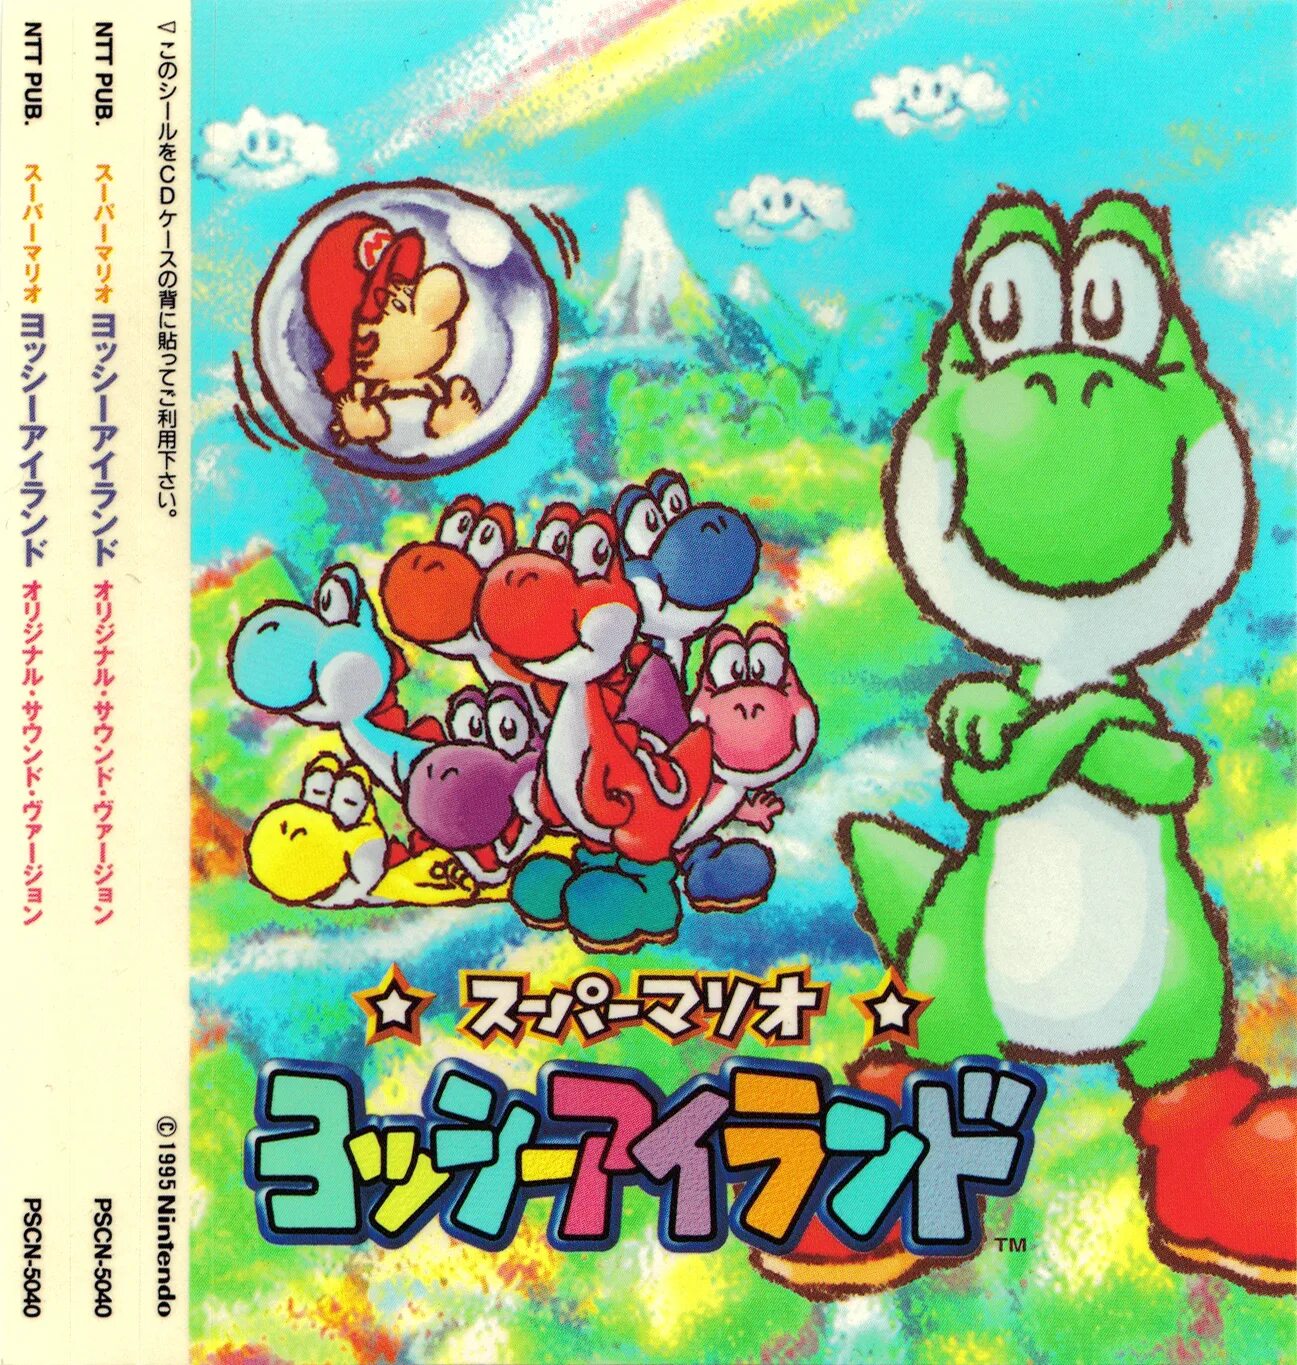 Mario yoshi island. Yoshi's Island Ноты. Super Mario World 2: Yoshi's Island Music. Yoshi s Island CD. Yoshi 8016.